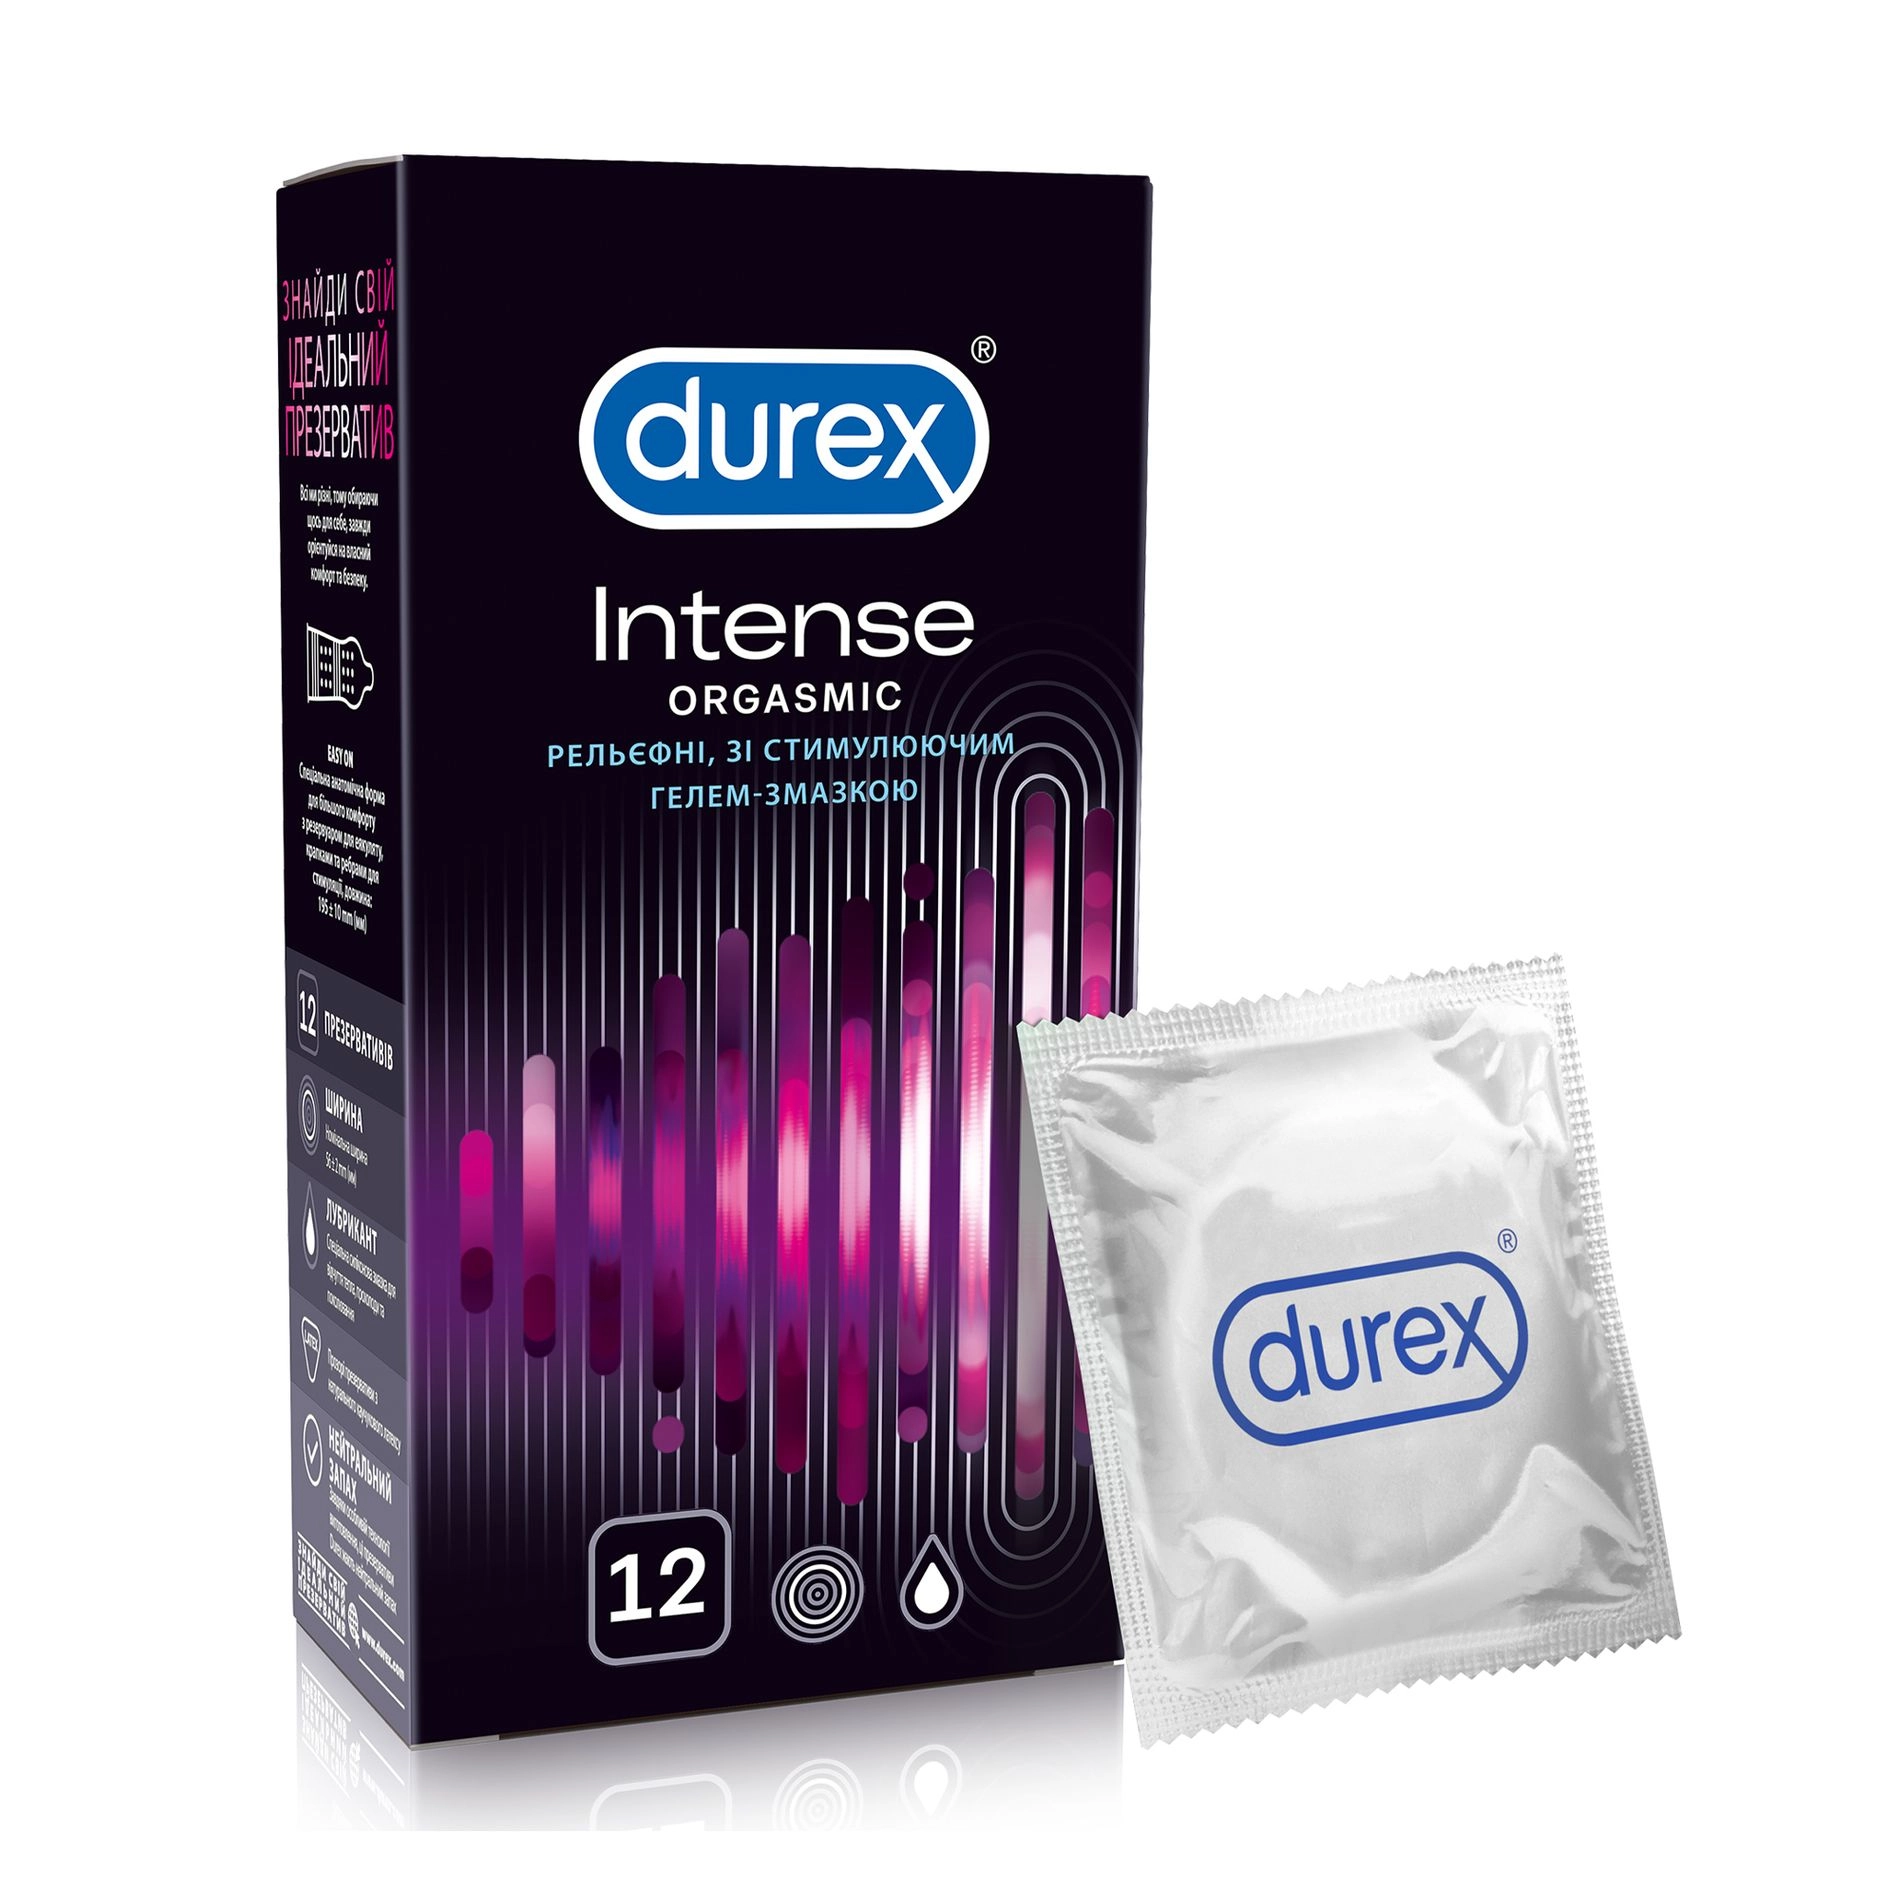 Durex Презервативы Intense Orgasmic Рельефные, со стимулирующим гелем-смазкой, 12 шт - фото N1